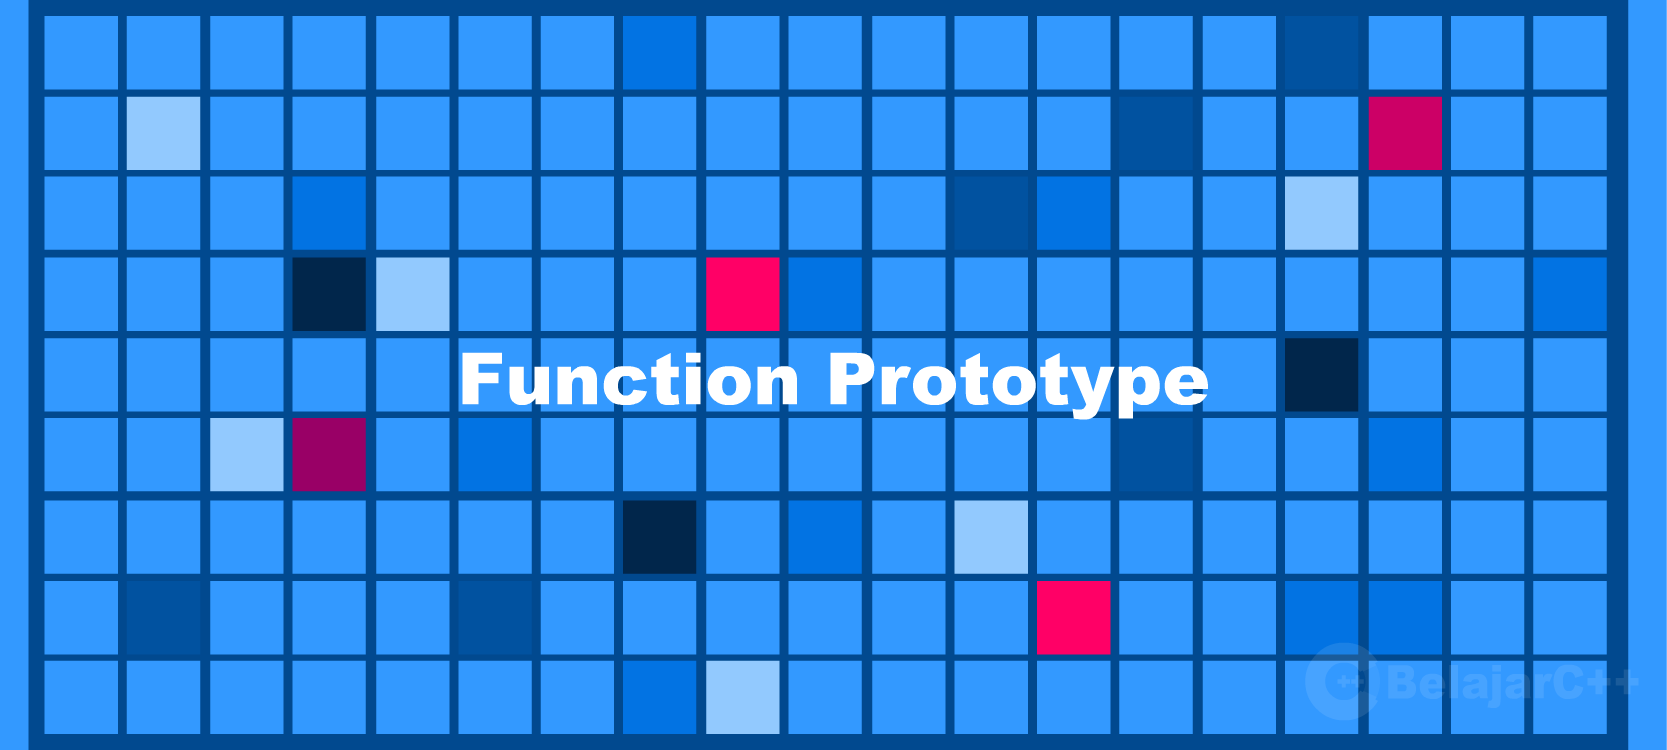 Function Prototype